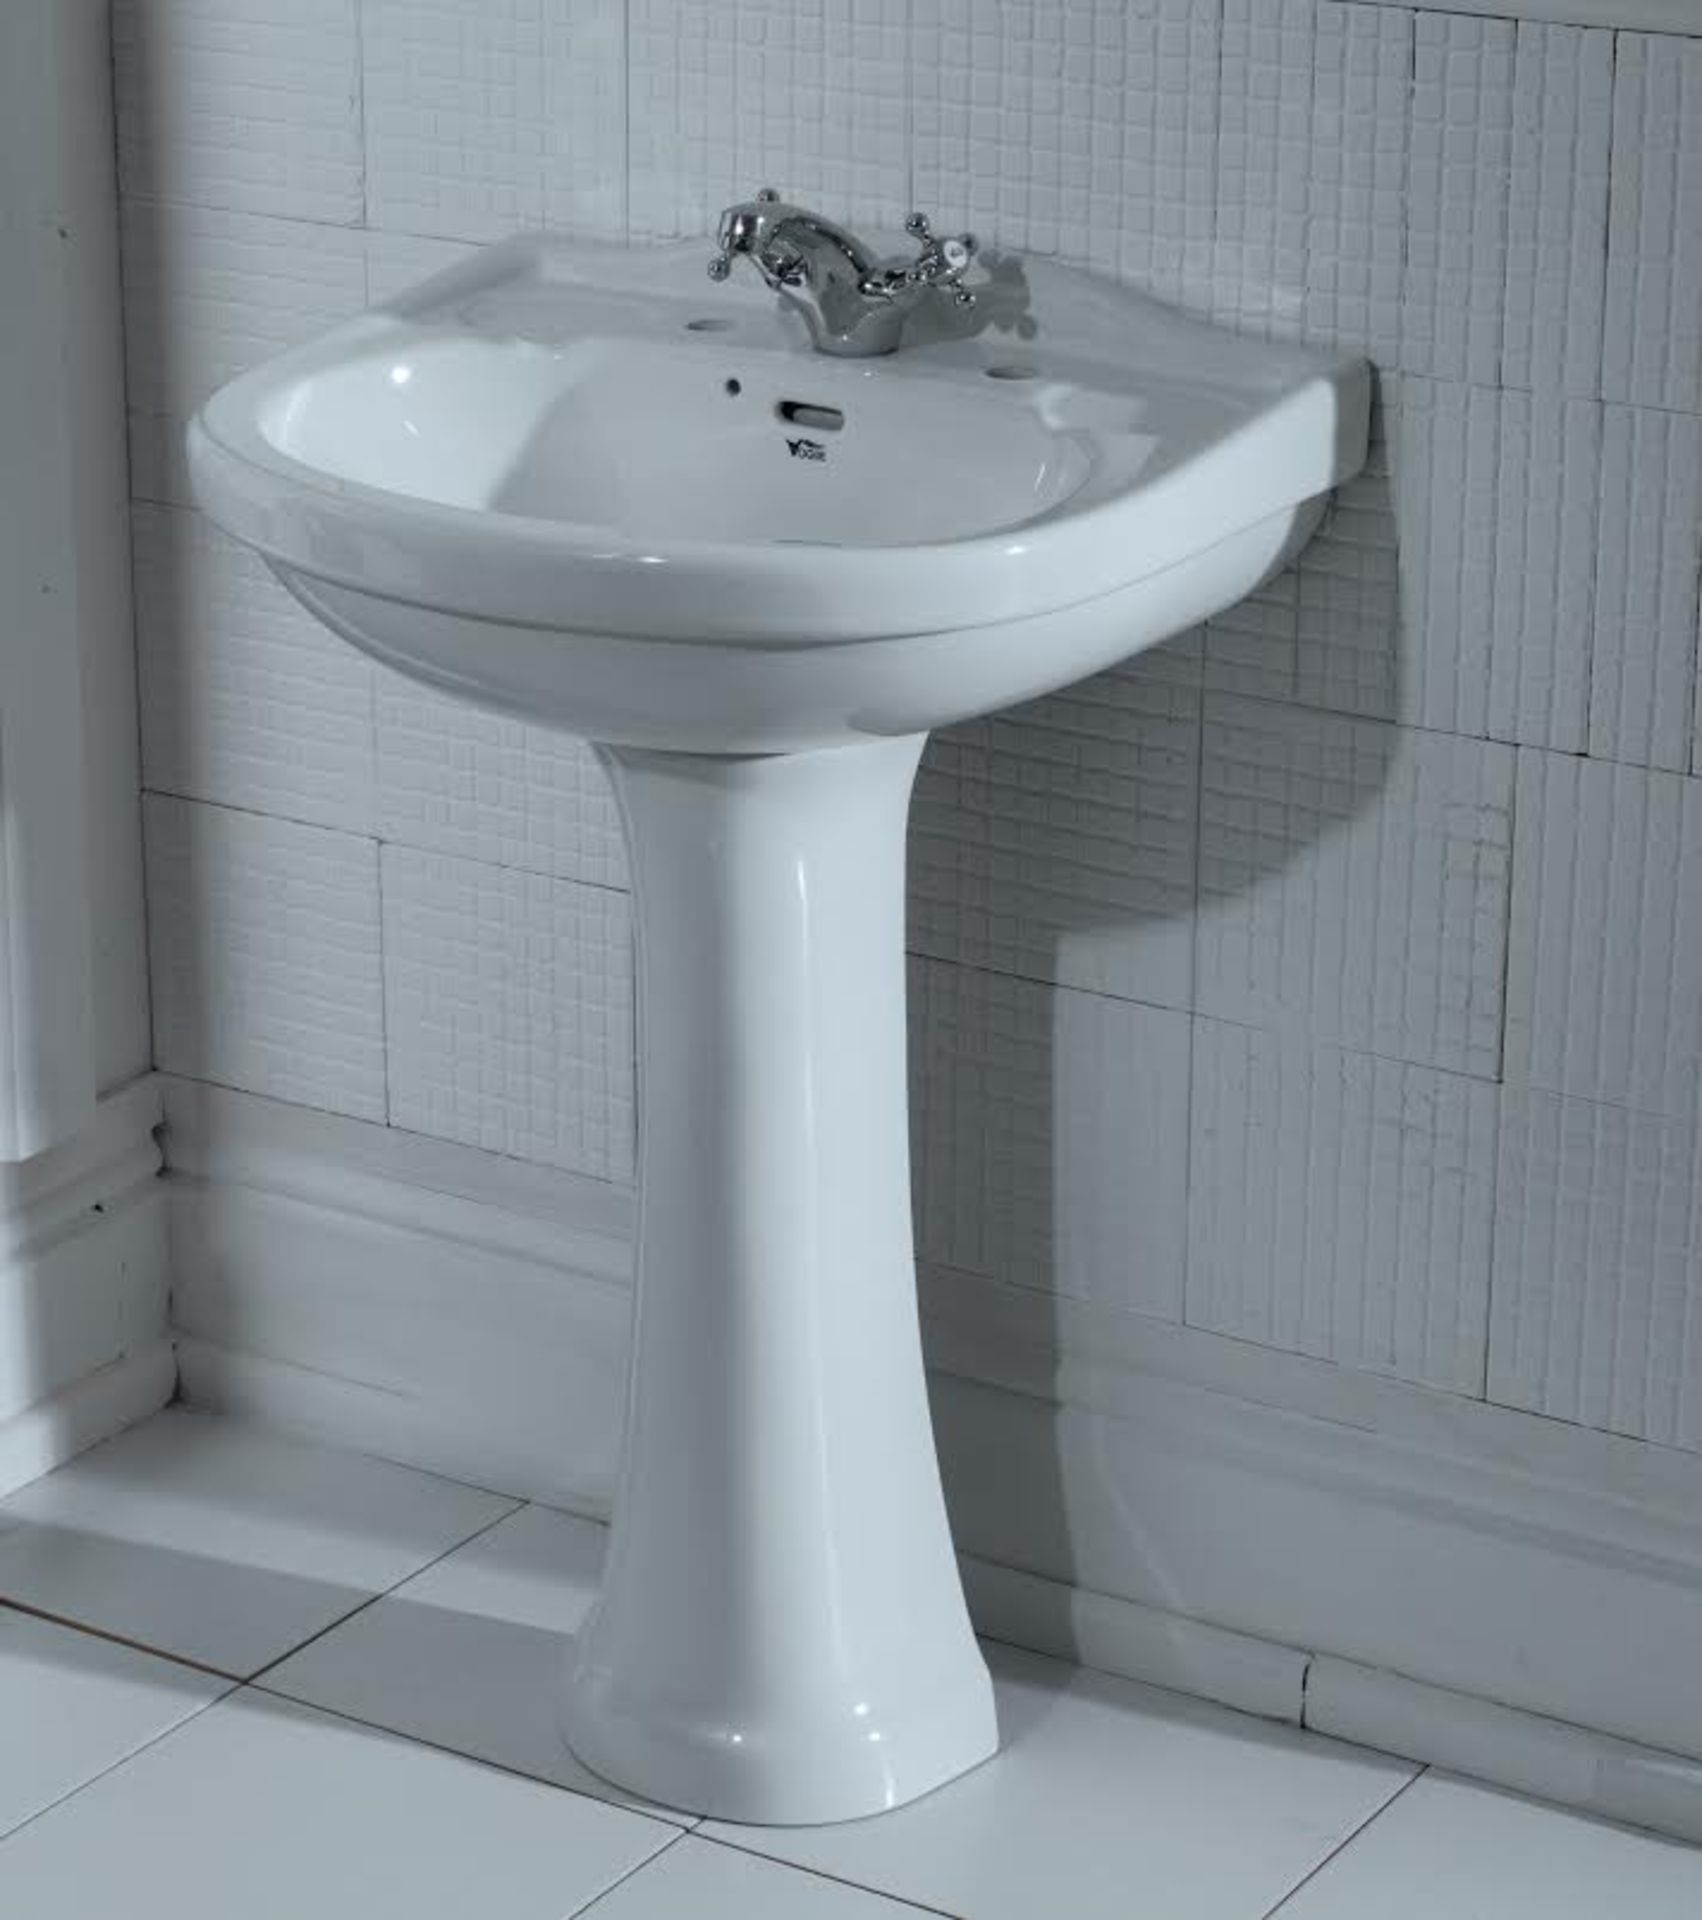 10 x Vogue Bathrooms CARLTON Sinigle Tap Hole SINK BASINS With Pedestals - 450mm Width - Brand New